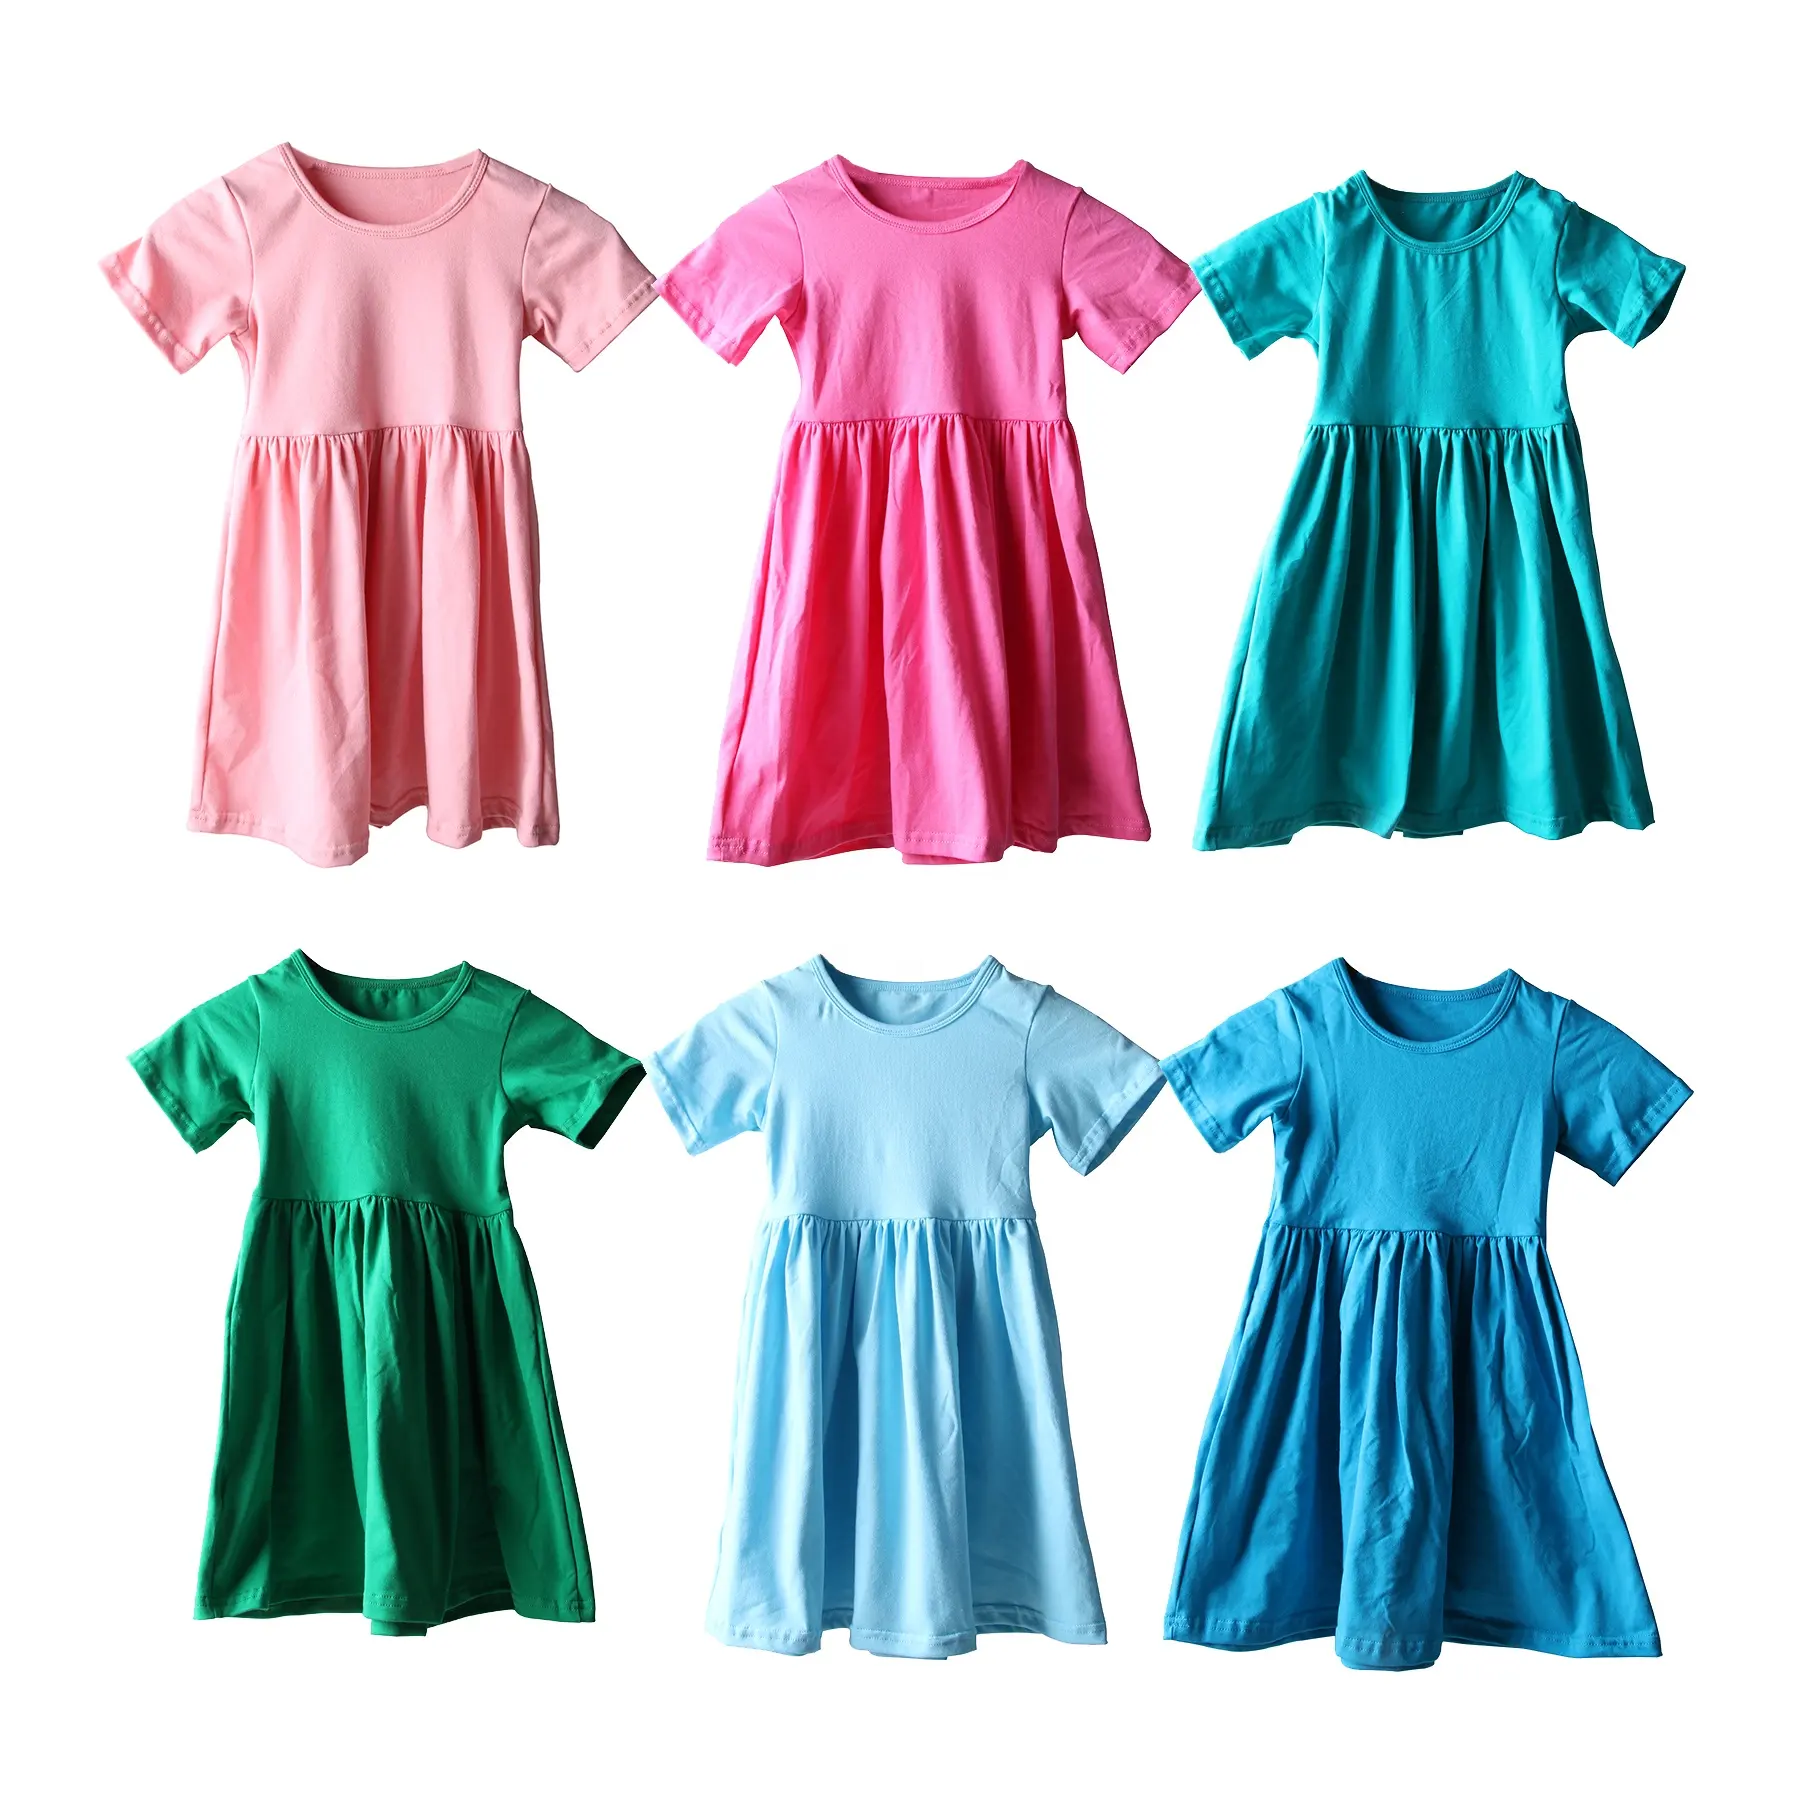 नए फैशन के बच्चों के फ्रॉक, लड़कियों के लिए छोटी आस्तीन वाली बुना हुआ पोशाक, बच्चों के लिए आरामदायक कॉटन पार्टी बेबी गर्ल्स ड्रेस